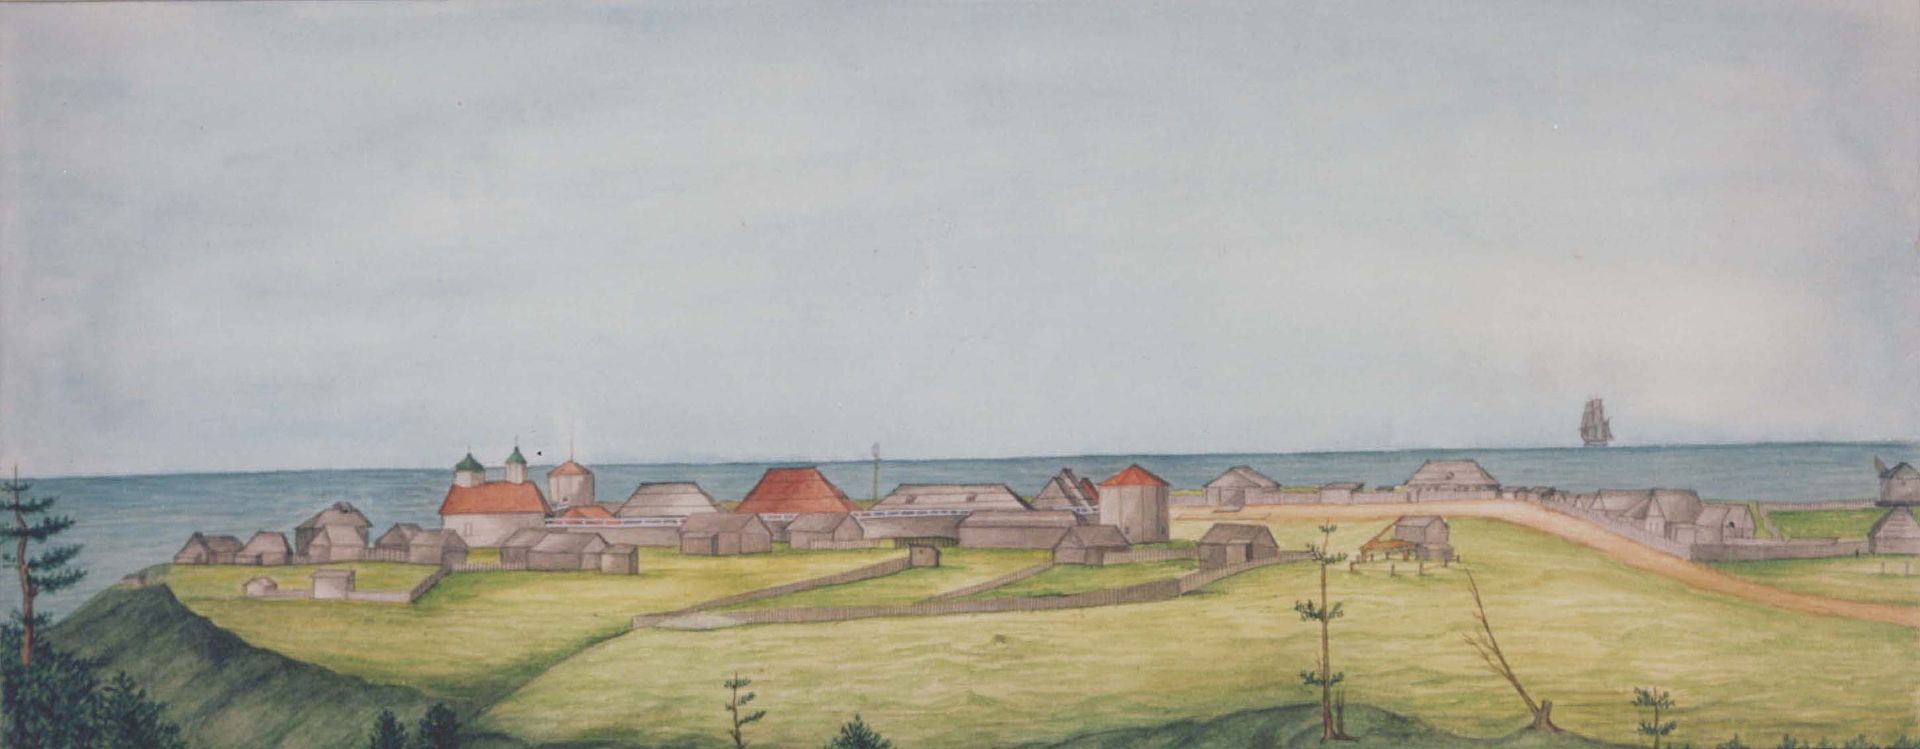 'Settlement Ross in 1841' by Ilya Voznesensky